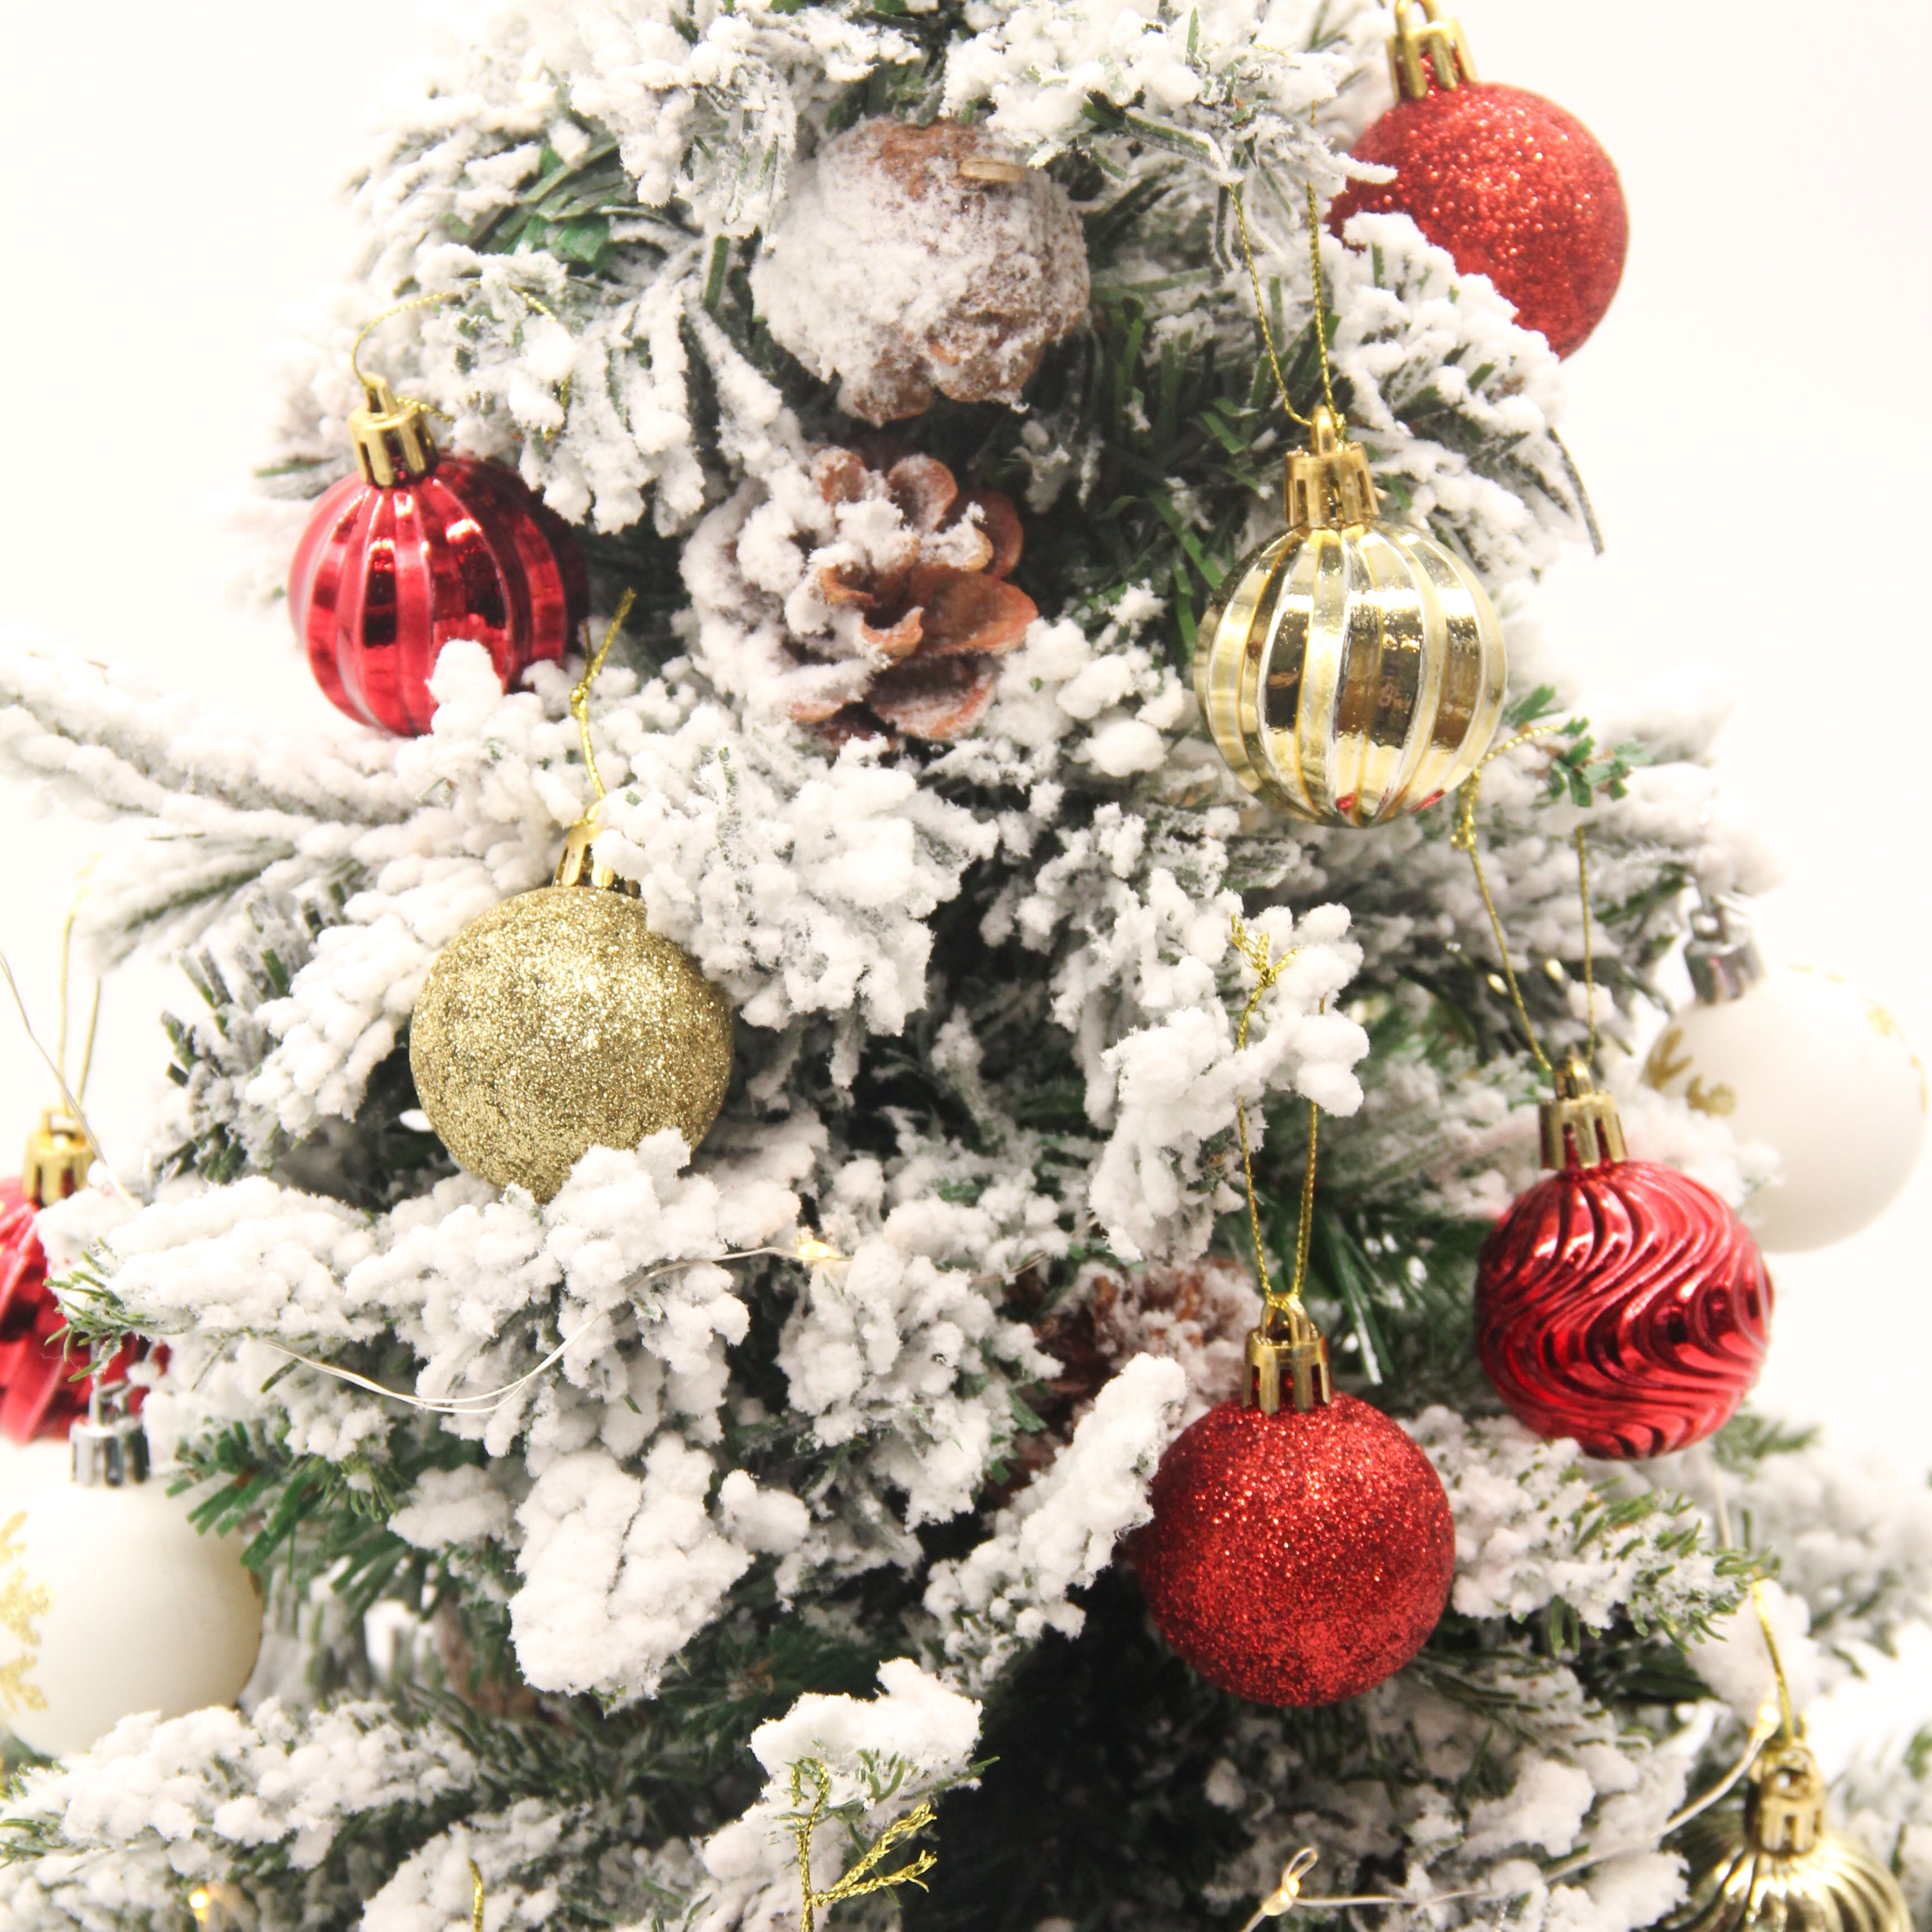 TULTA JR. (Fire sign) 60cm Mini Christmas Tree Set